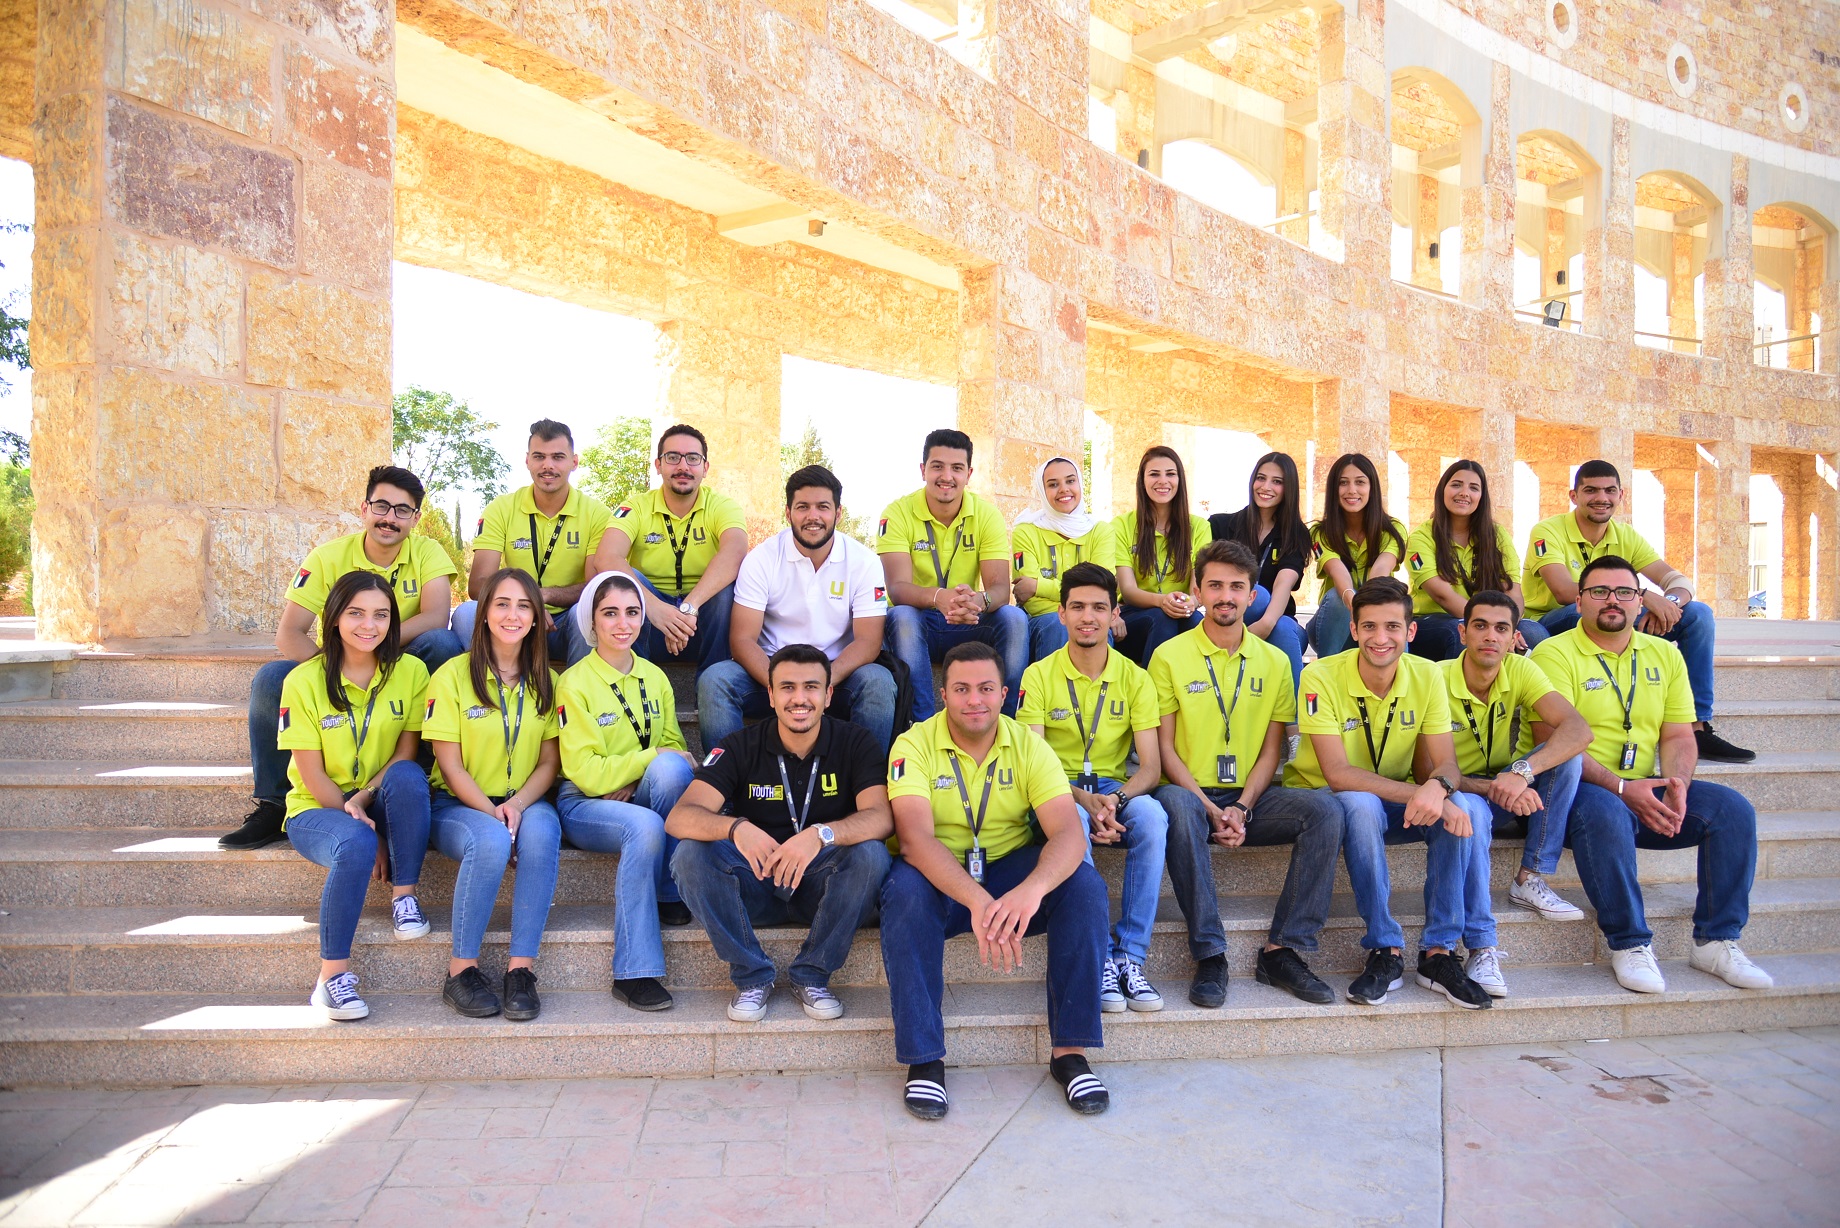 أمنیة تطلق حملتھا التسویقیة المبتكرة للشباب "Village Shababi " في 8 جامعات أردنیة